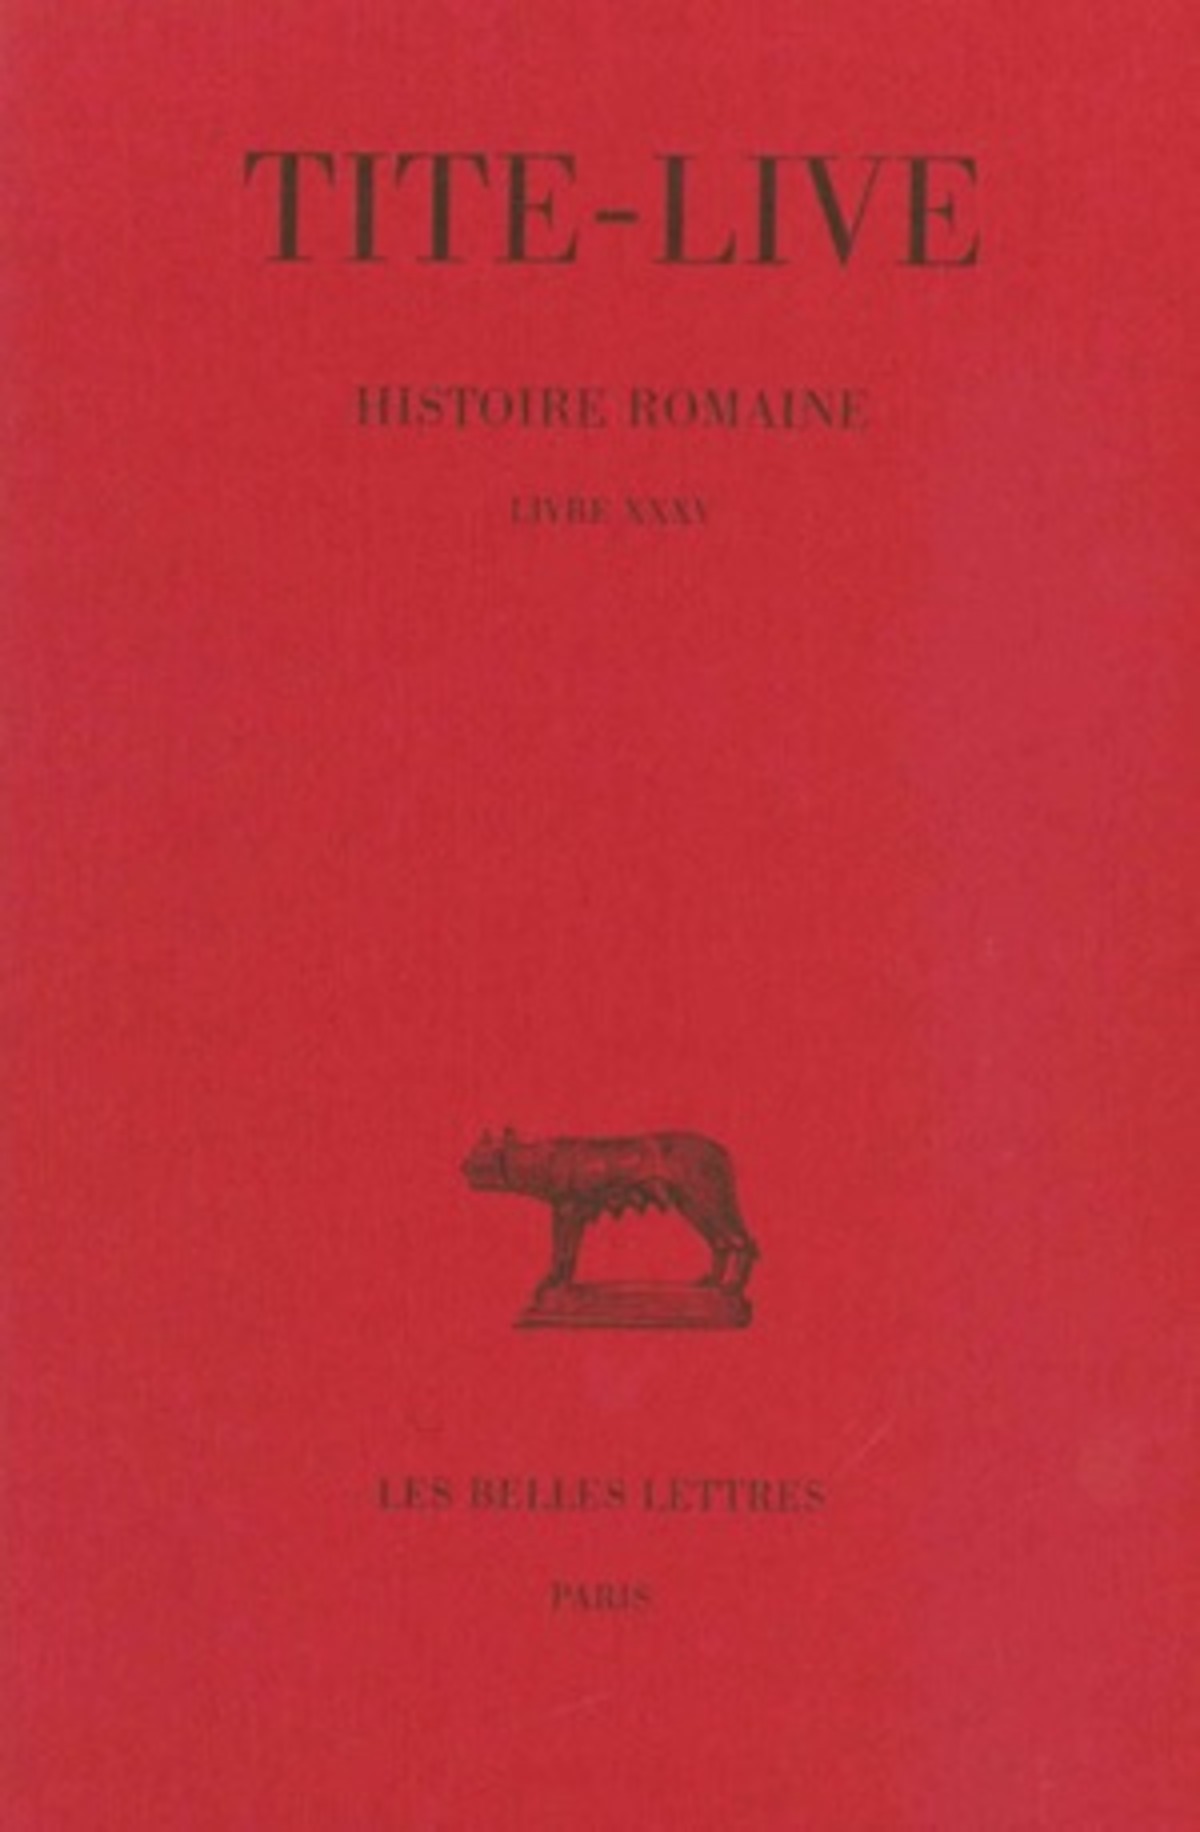 Histoire romaine. Tome XXV : Livre XXXV